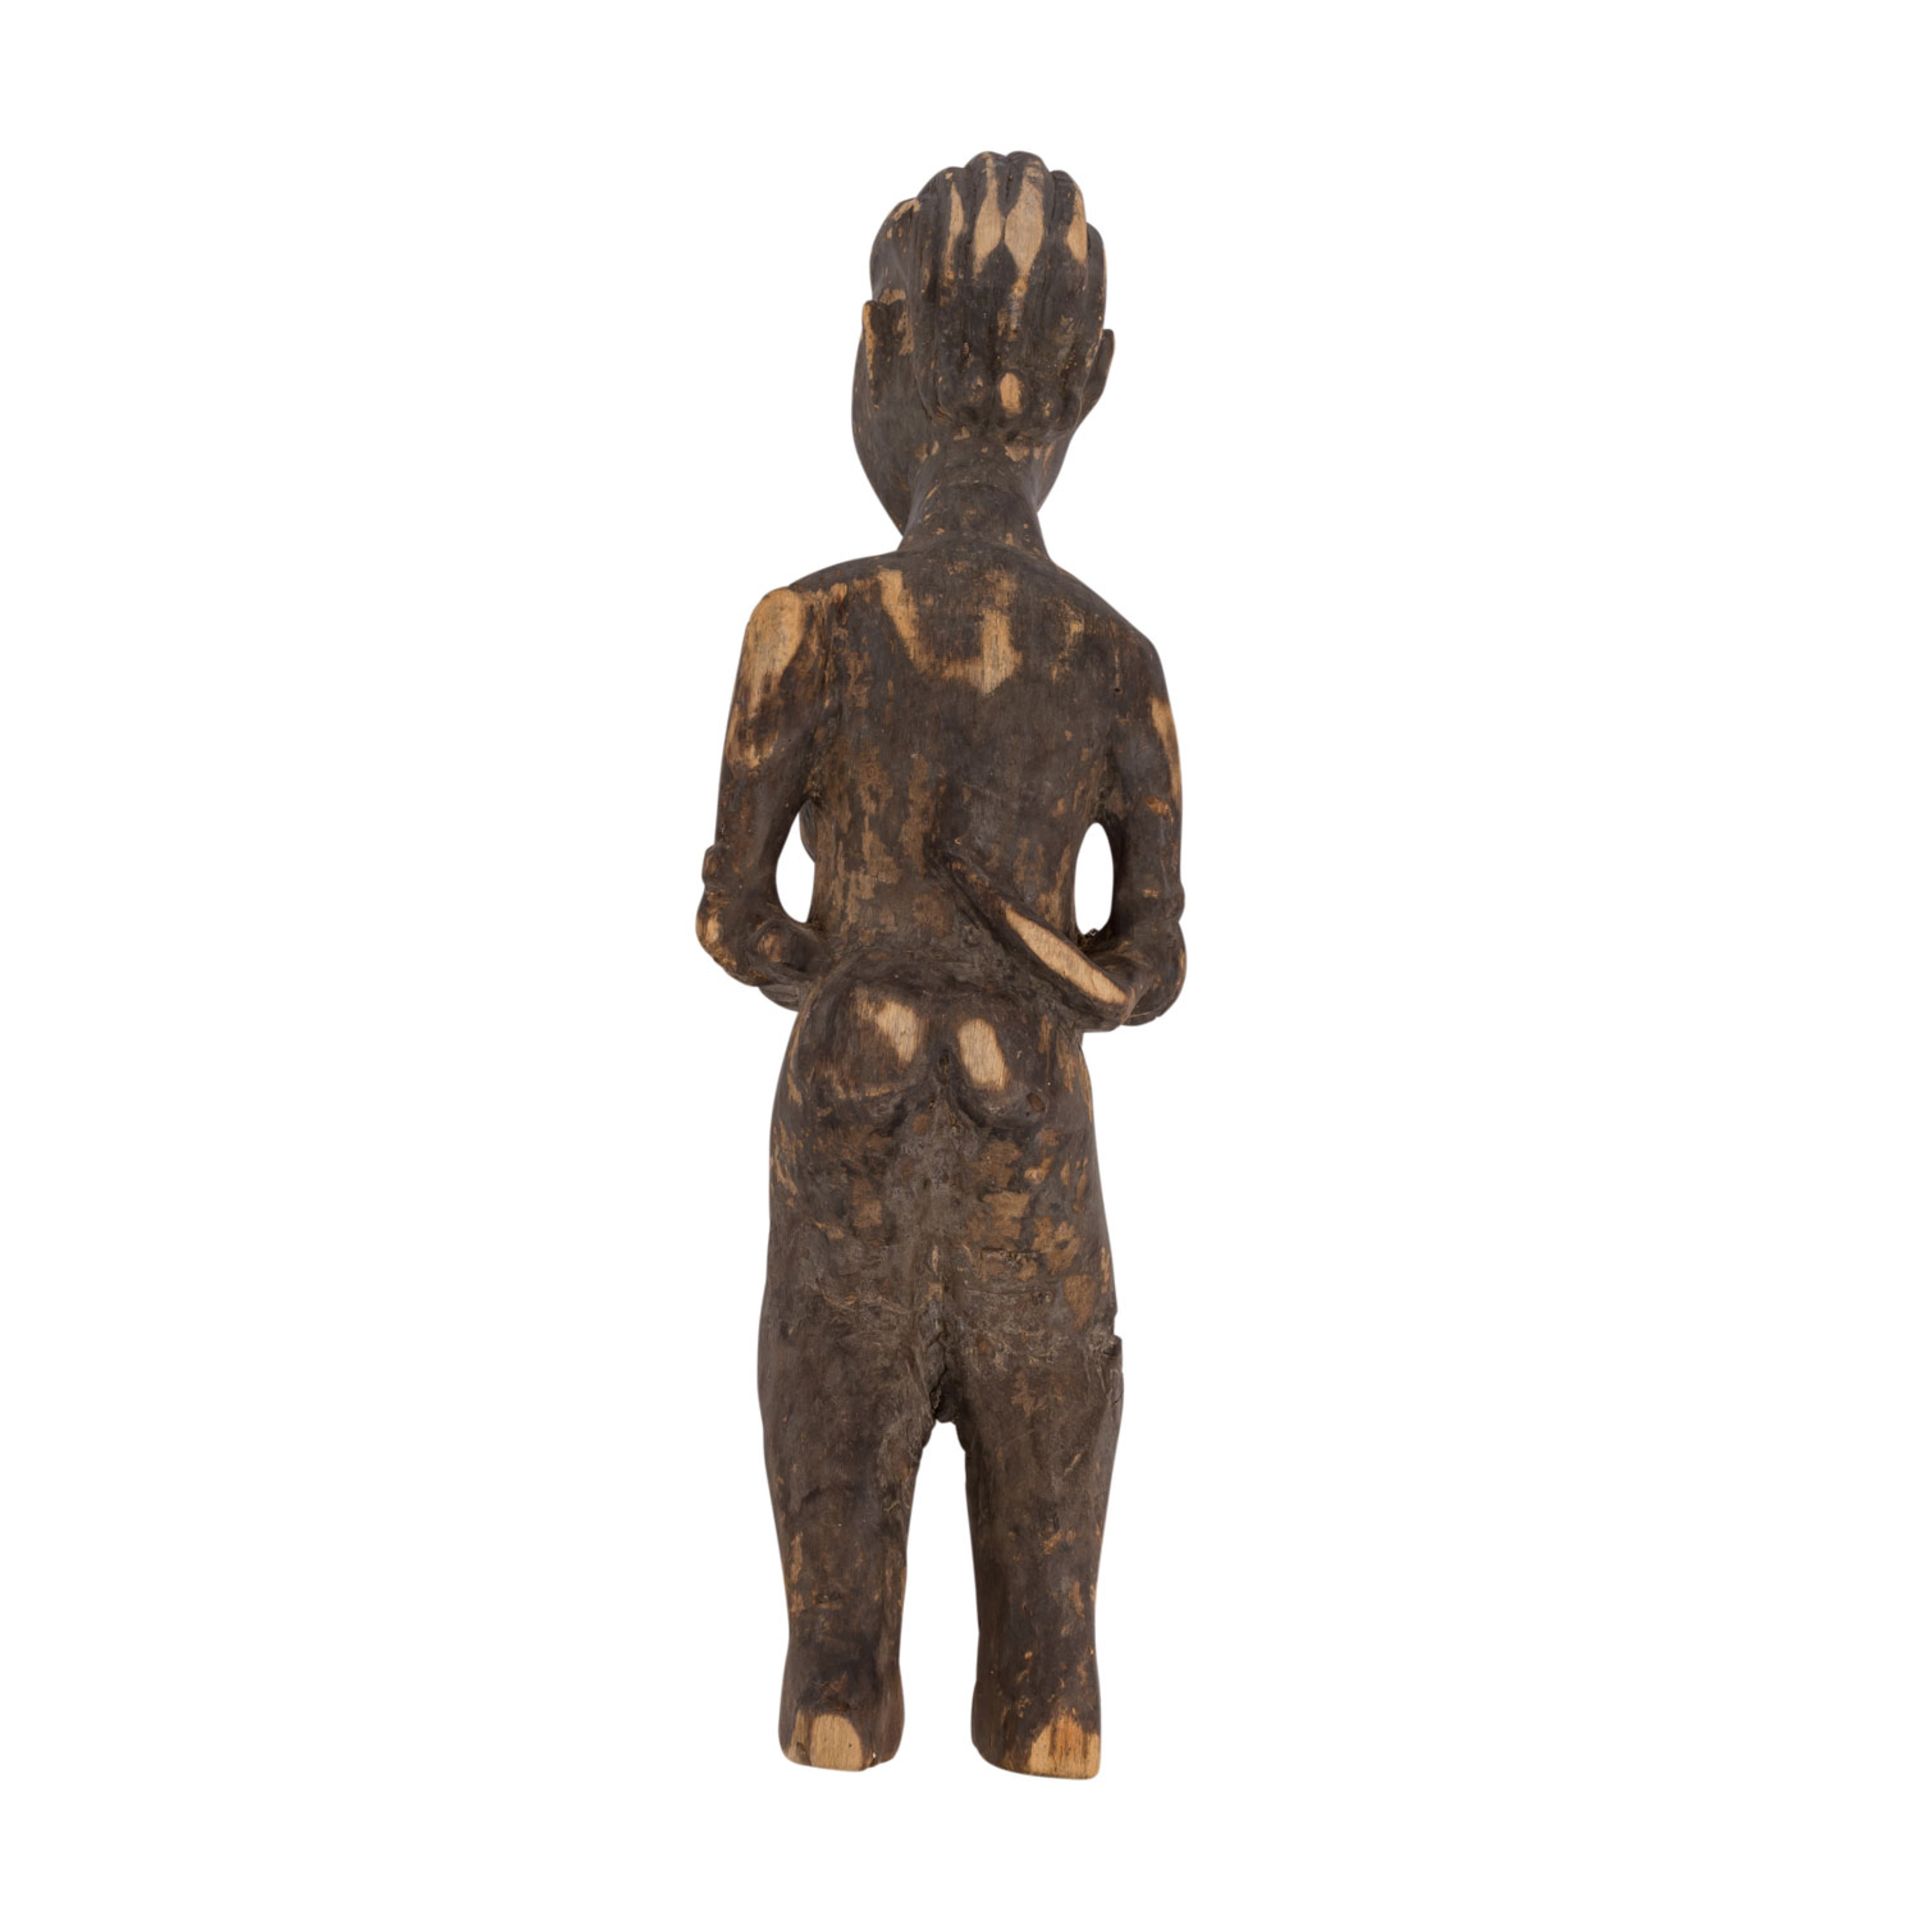 GESCHNITZTE WEIBLICHE FIGURWestafrika, weibliche Standfigur aus Holz, fein und detailreich - Bild 2 aus 3